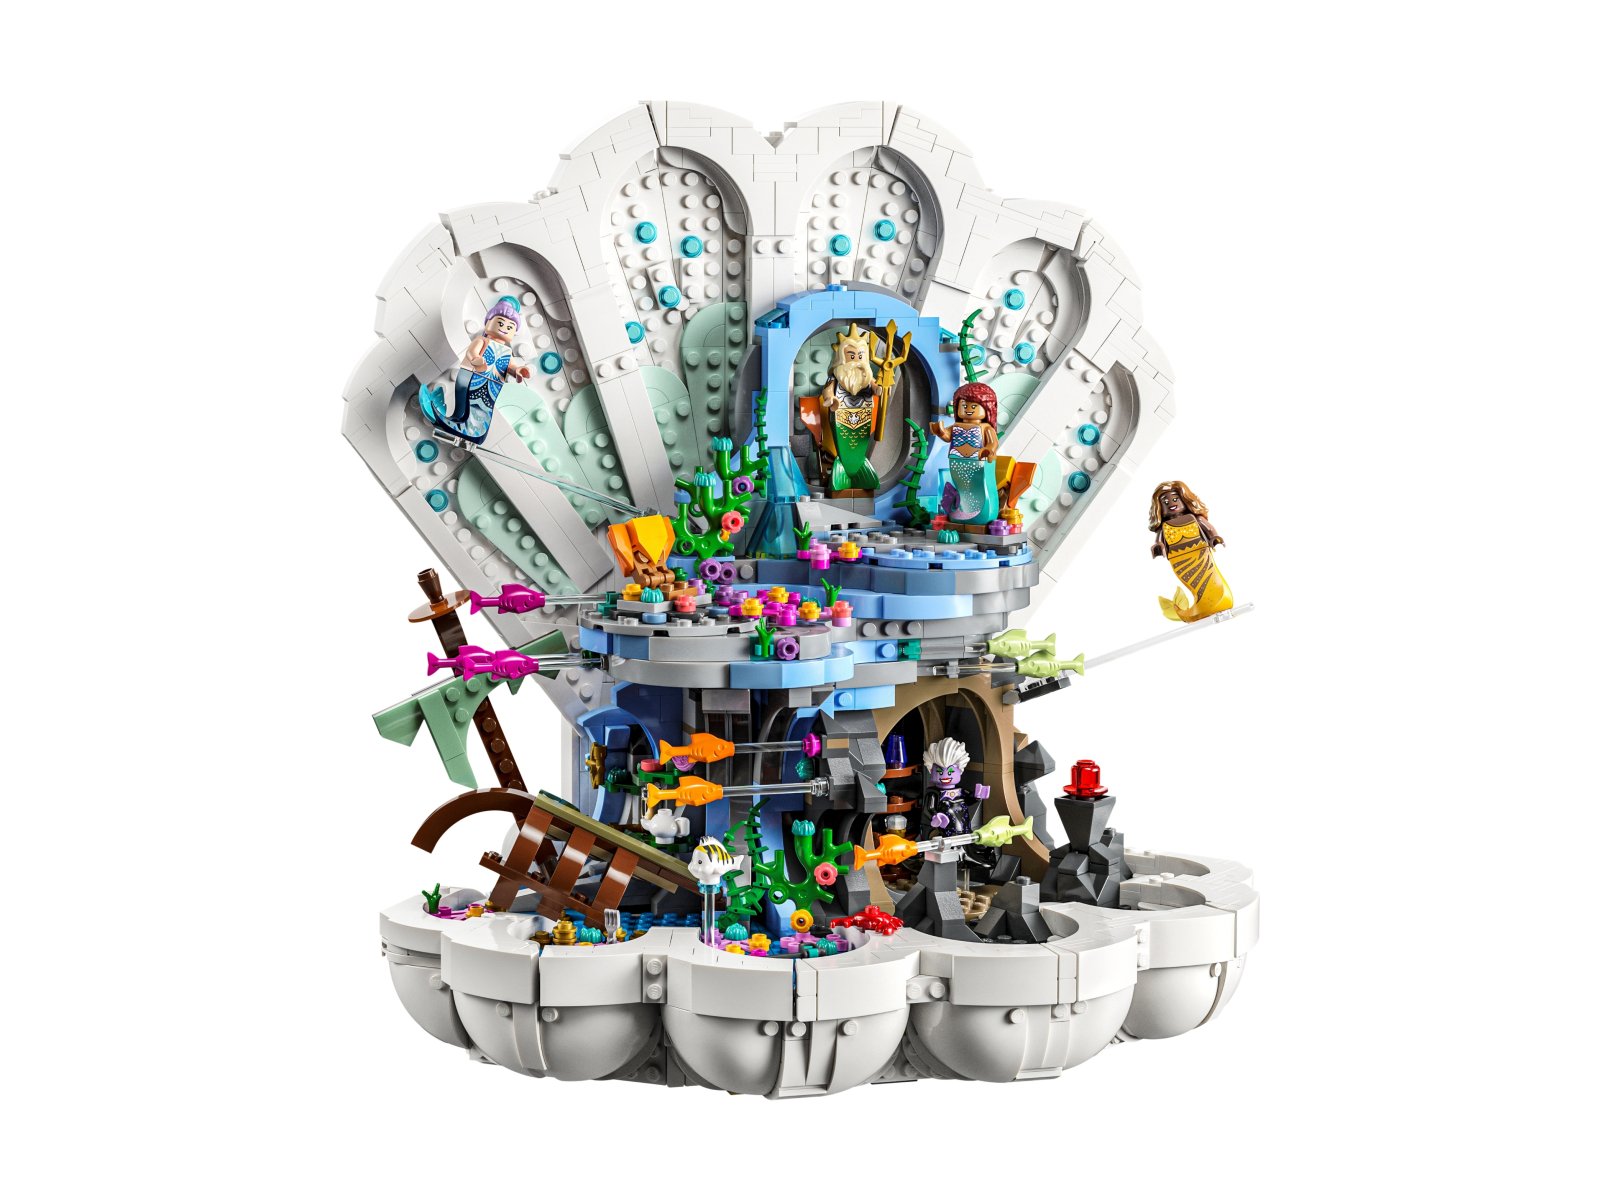 LEGO Disney Królewska muszla Małej Syrenki 43225